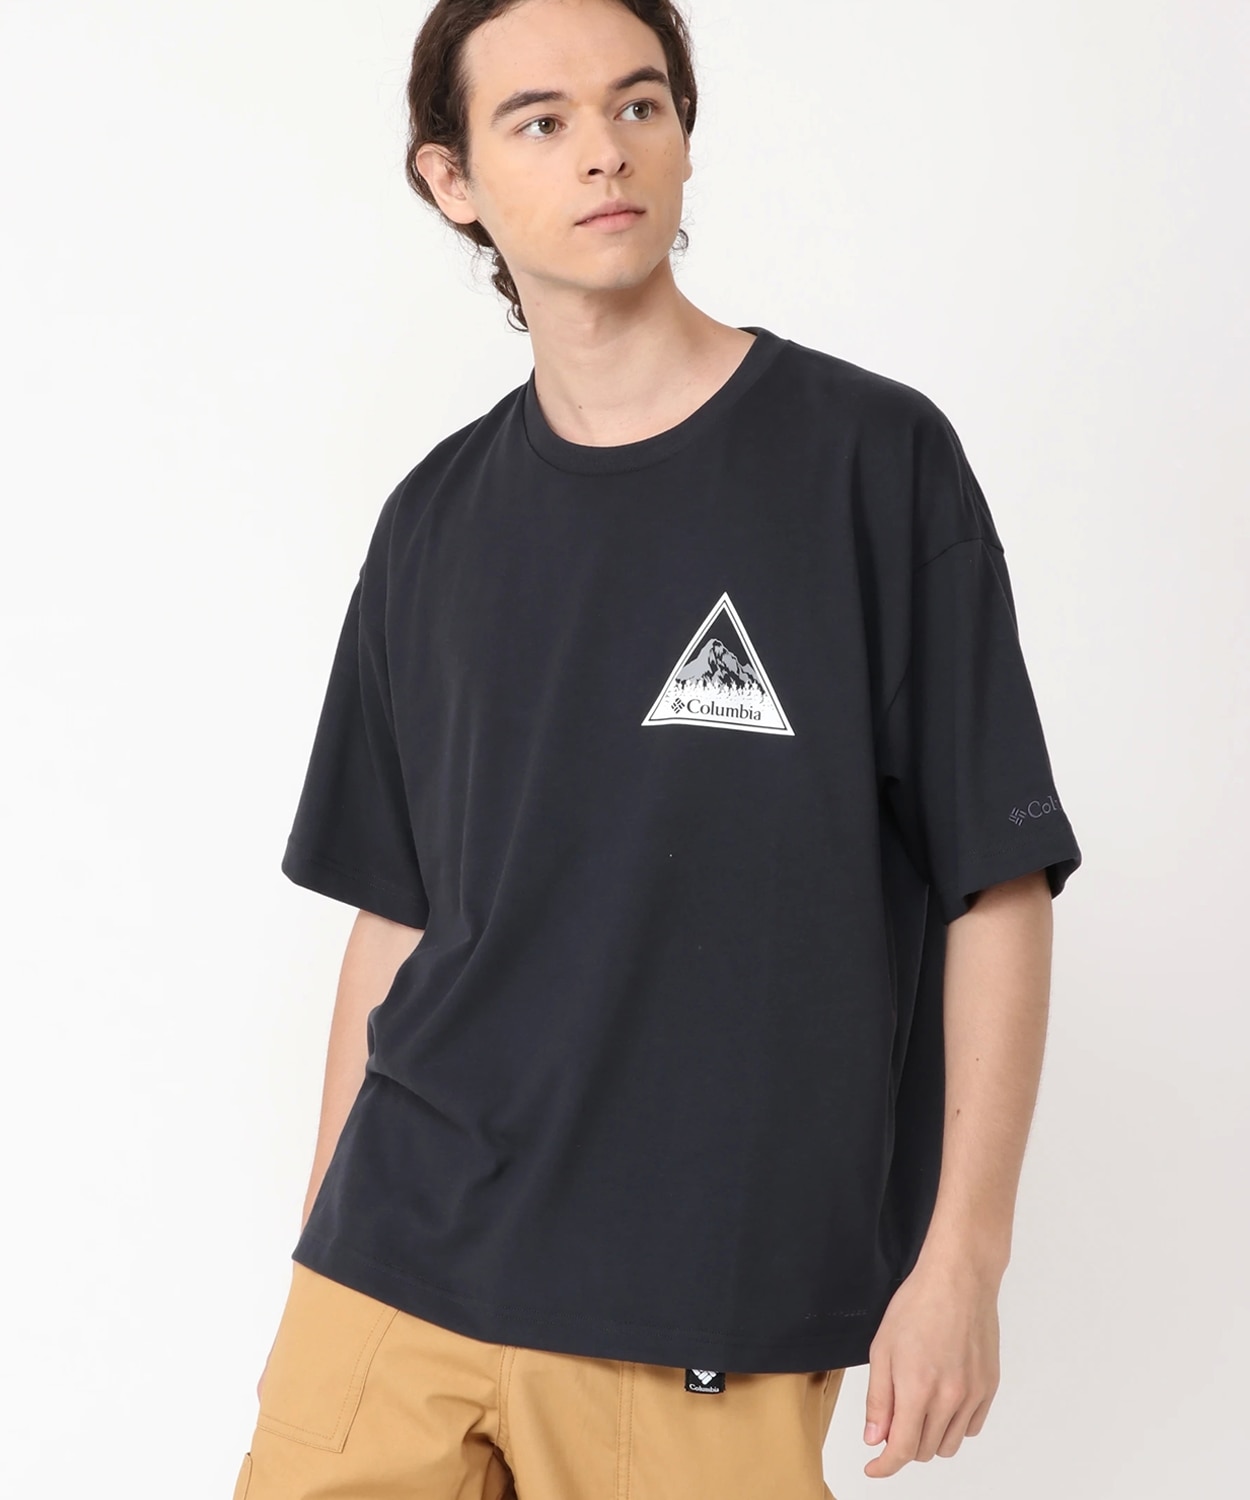 コールドベイダッシュショートスリーブTシャツ(XS Black)│コロンビア(Columbia)公式通販サイト